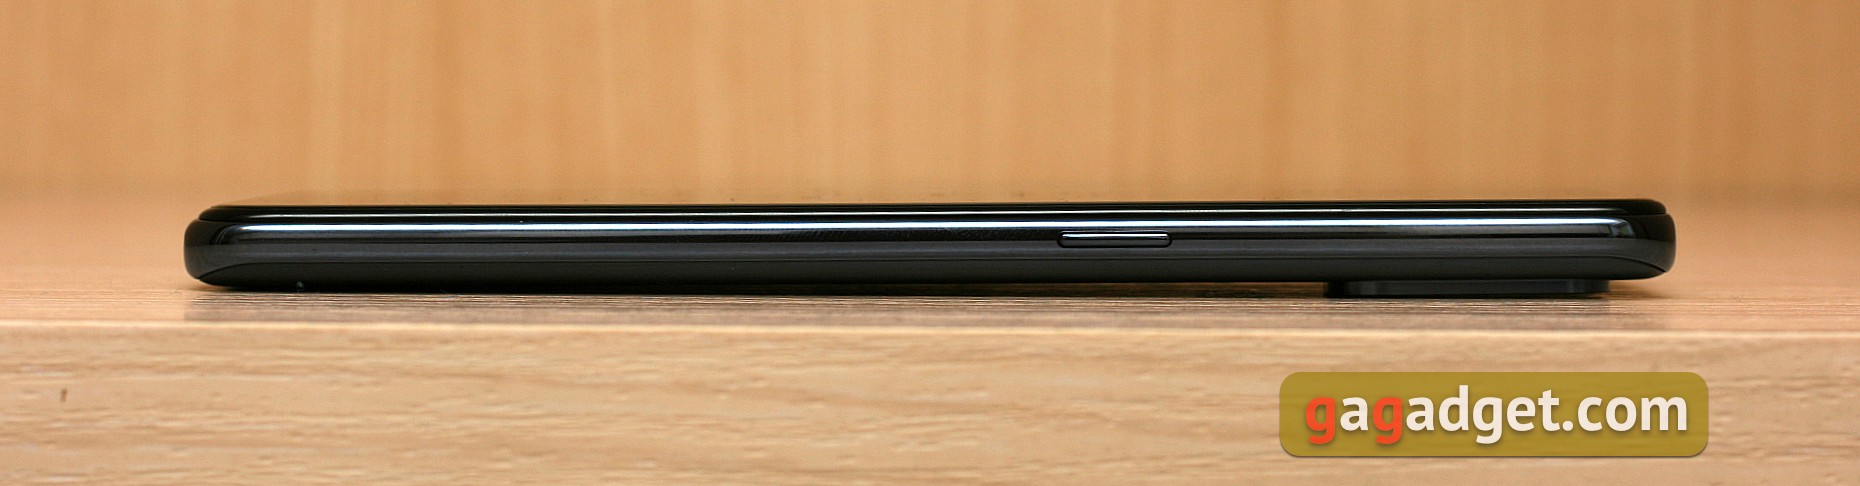 Обзор OnePlus Nord N10 5G: средний класс создателей «убийц флагманов»-6